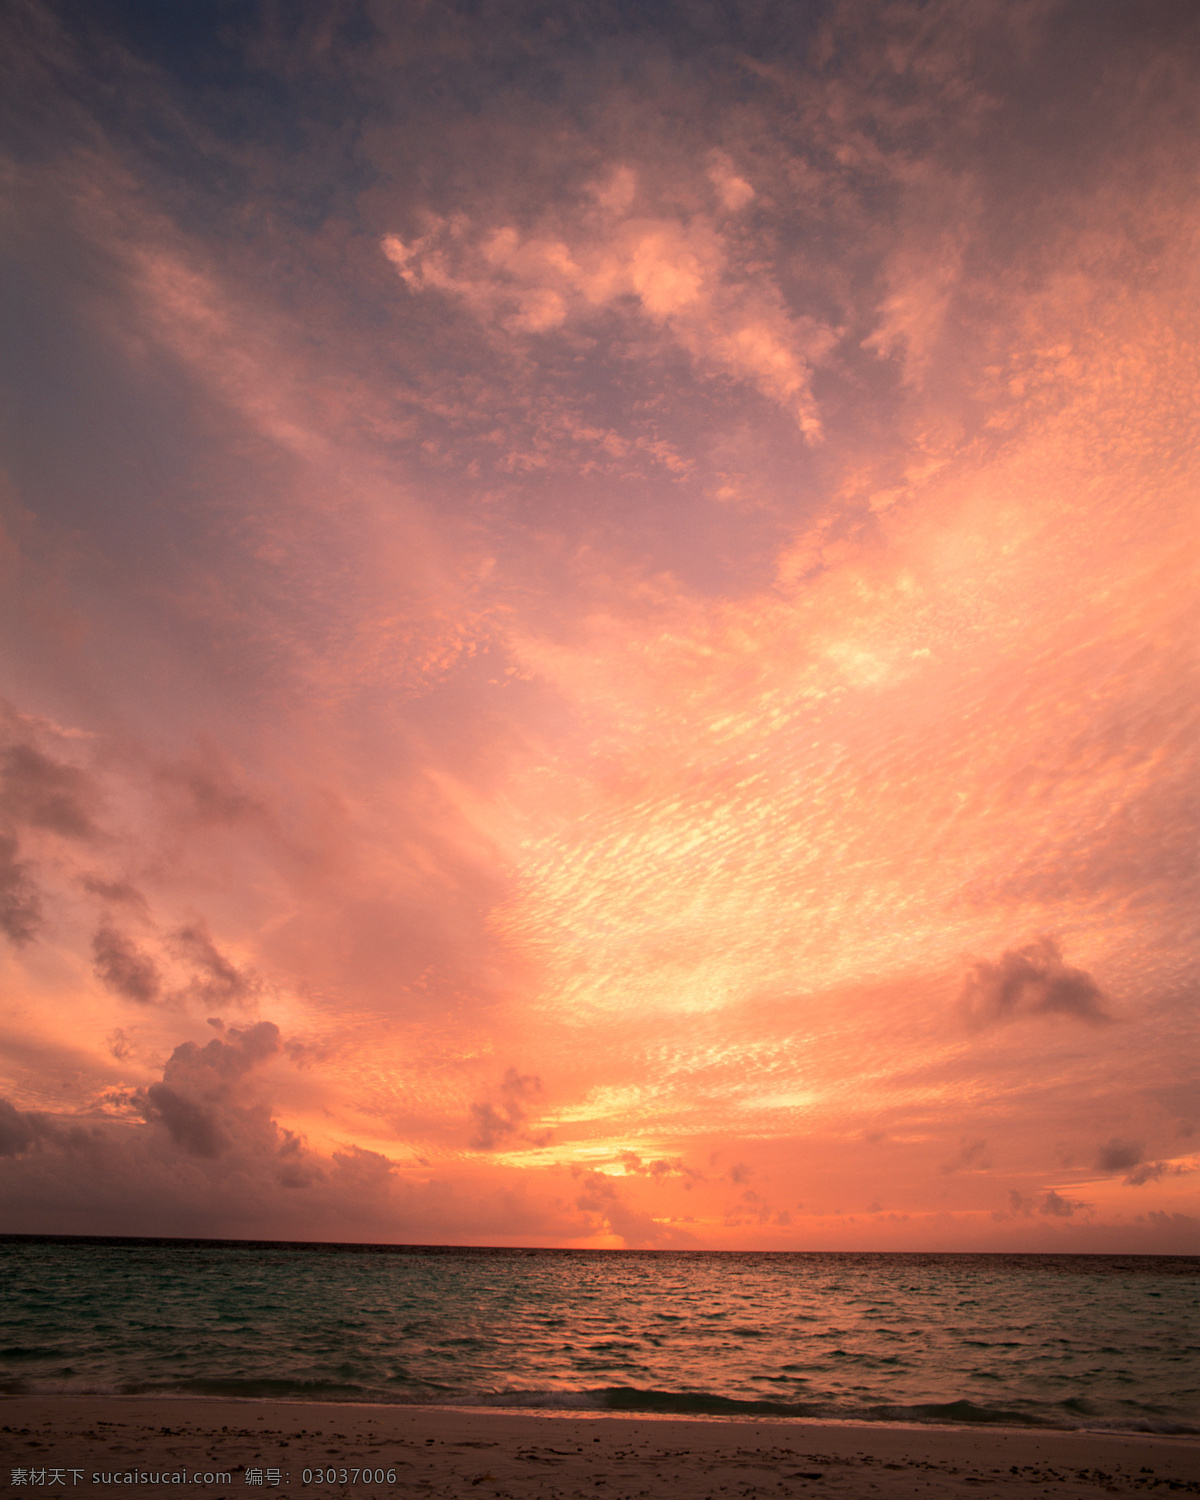 黄昏 落日 日落 礁石 逆光 天空 彩霞 霞光 大海 自然景观 自然风景